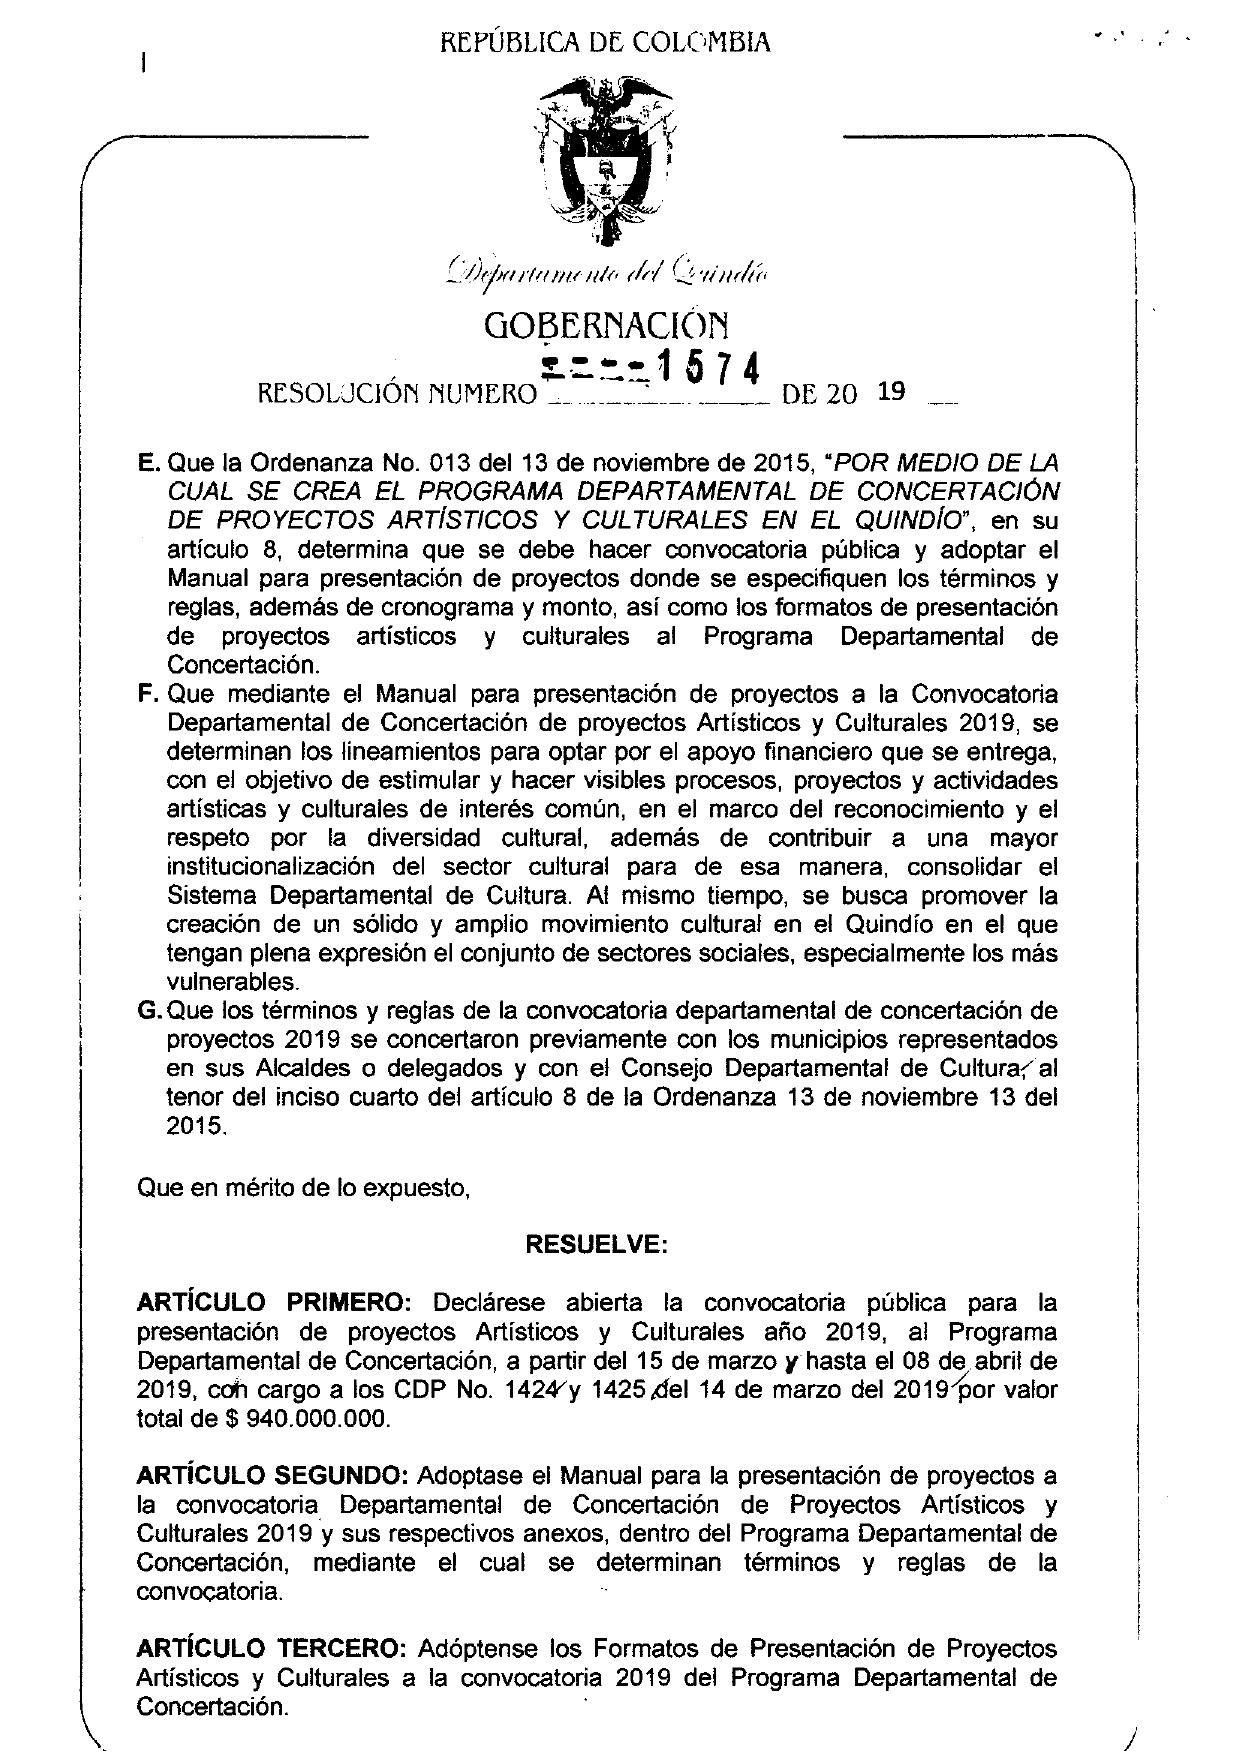 Resolucion 1574 Concertacion Deptal 2019 page 0002